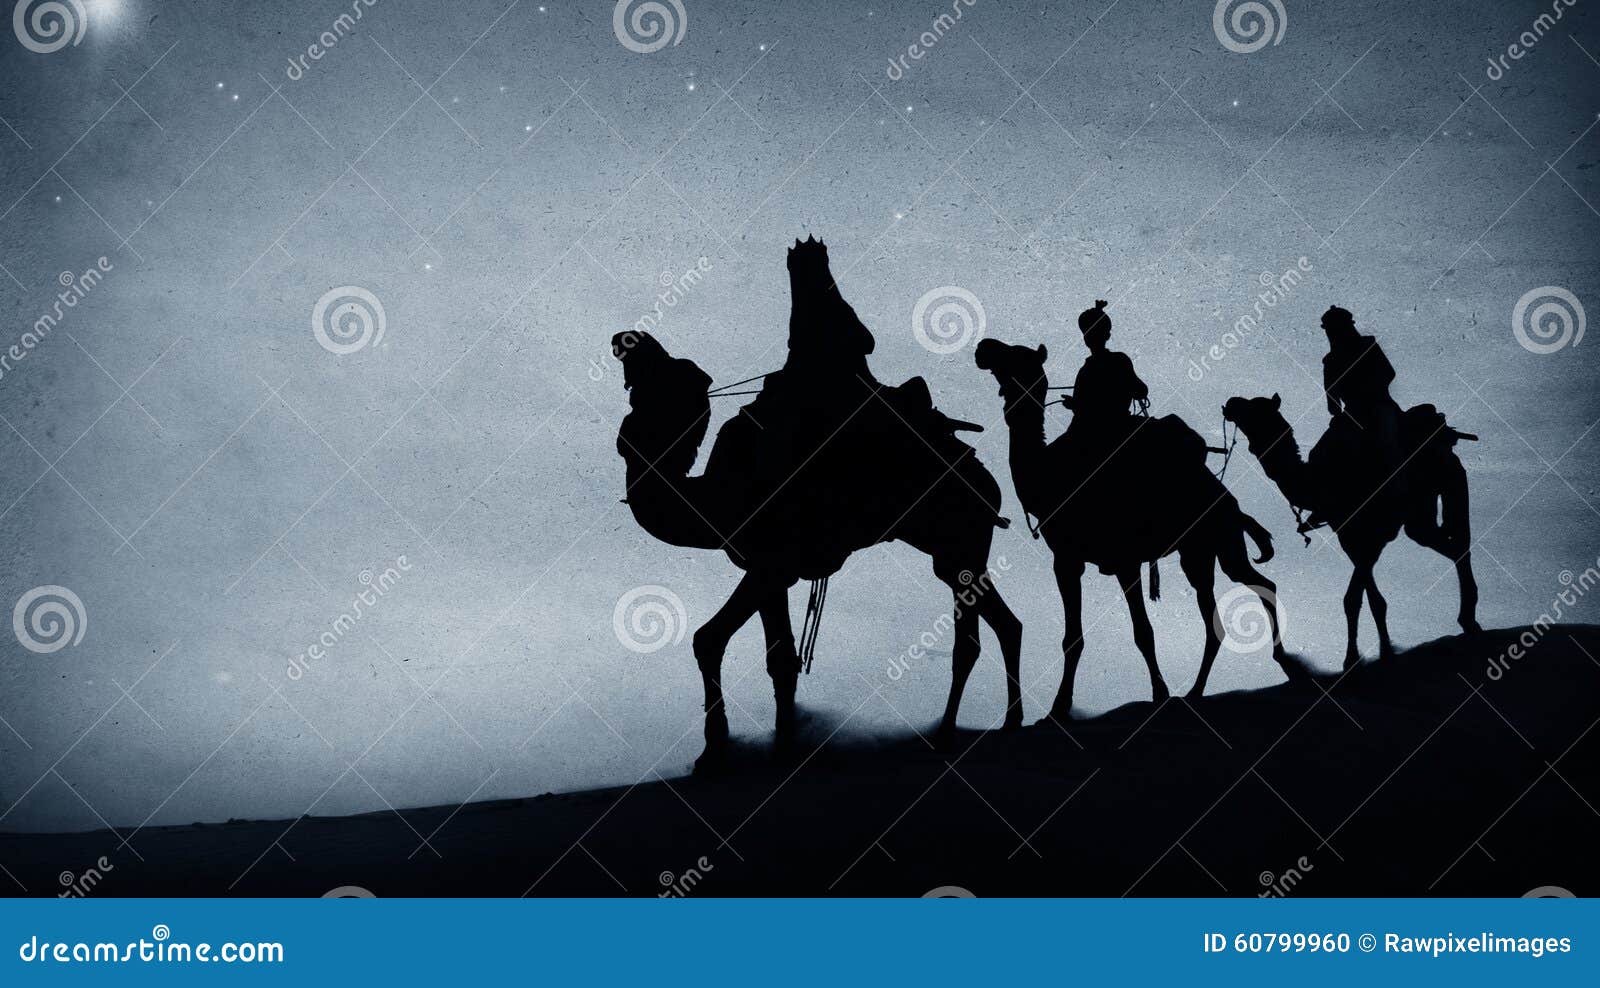 three kings desert star of bethlehem nativity concept